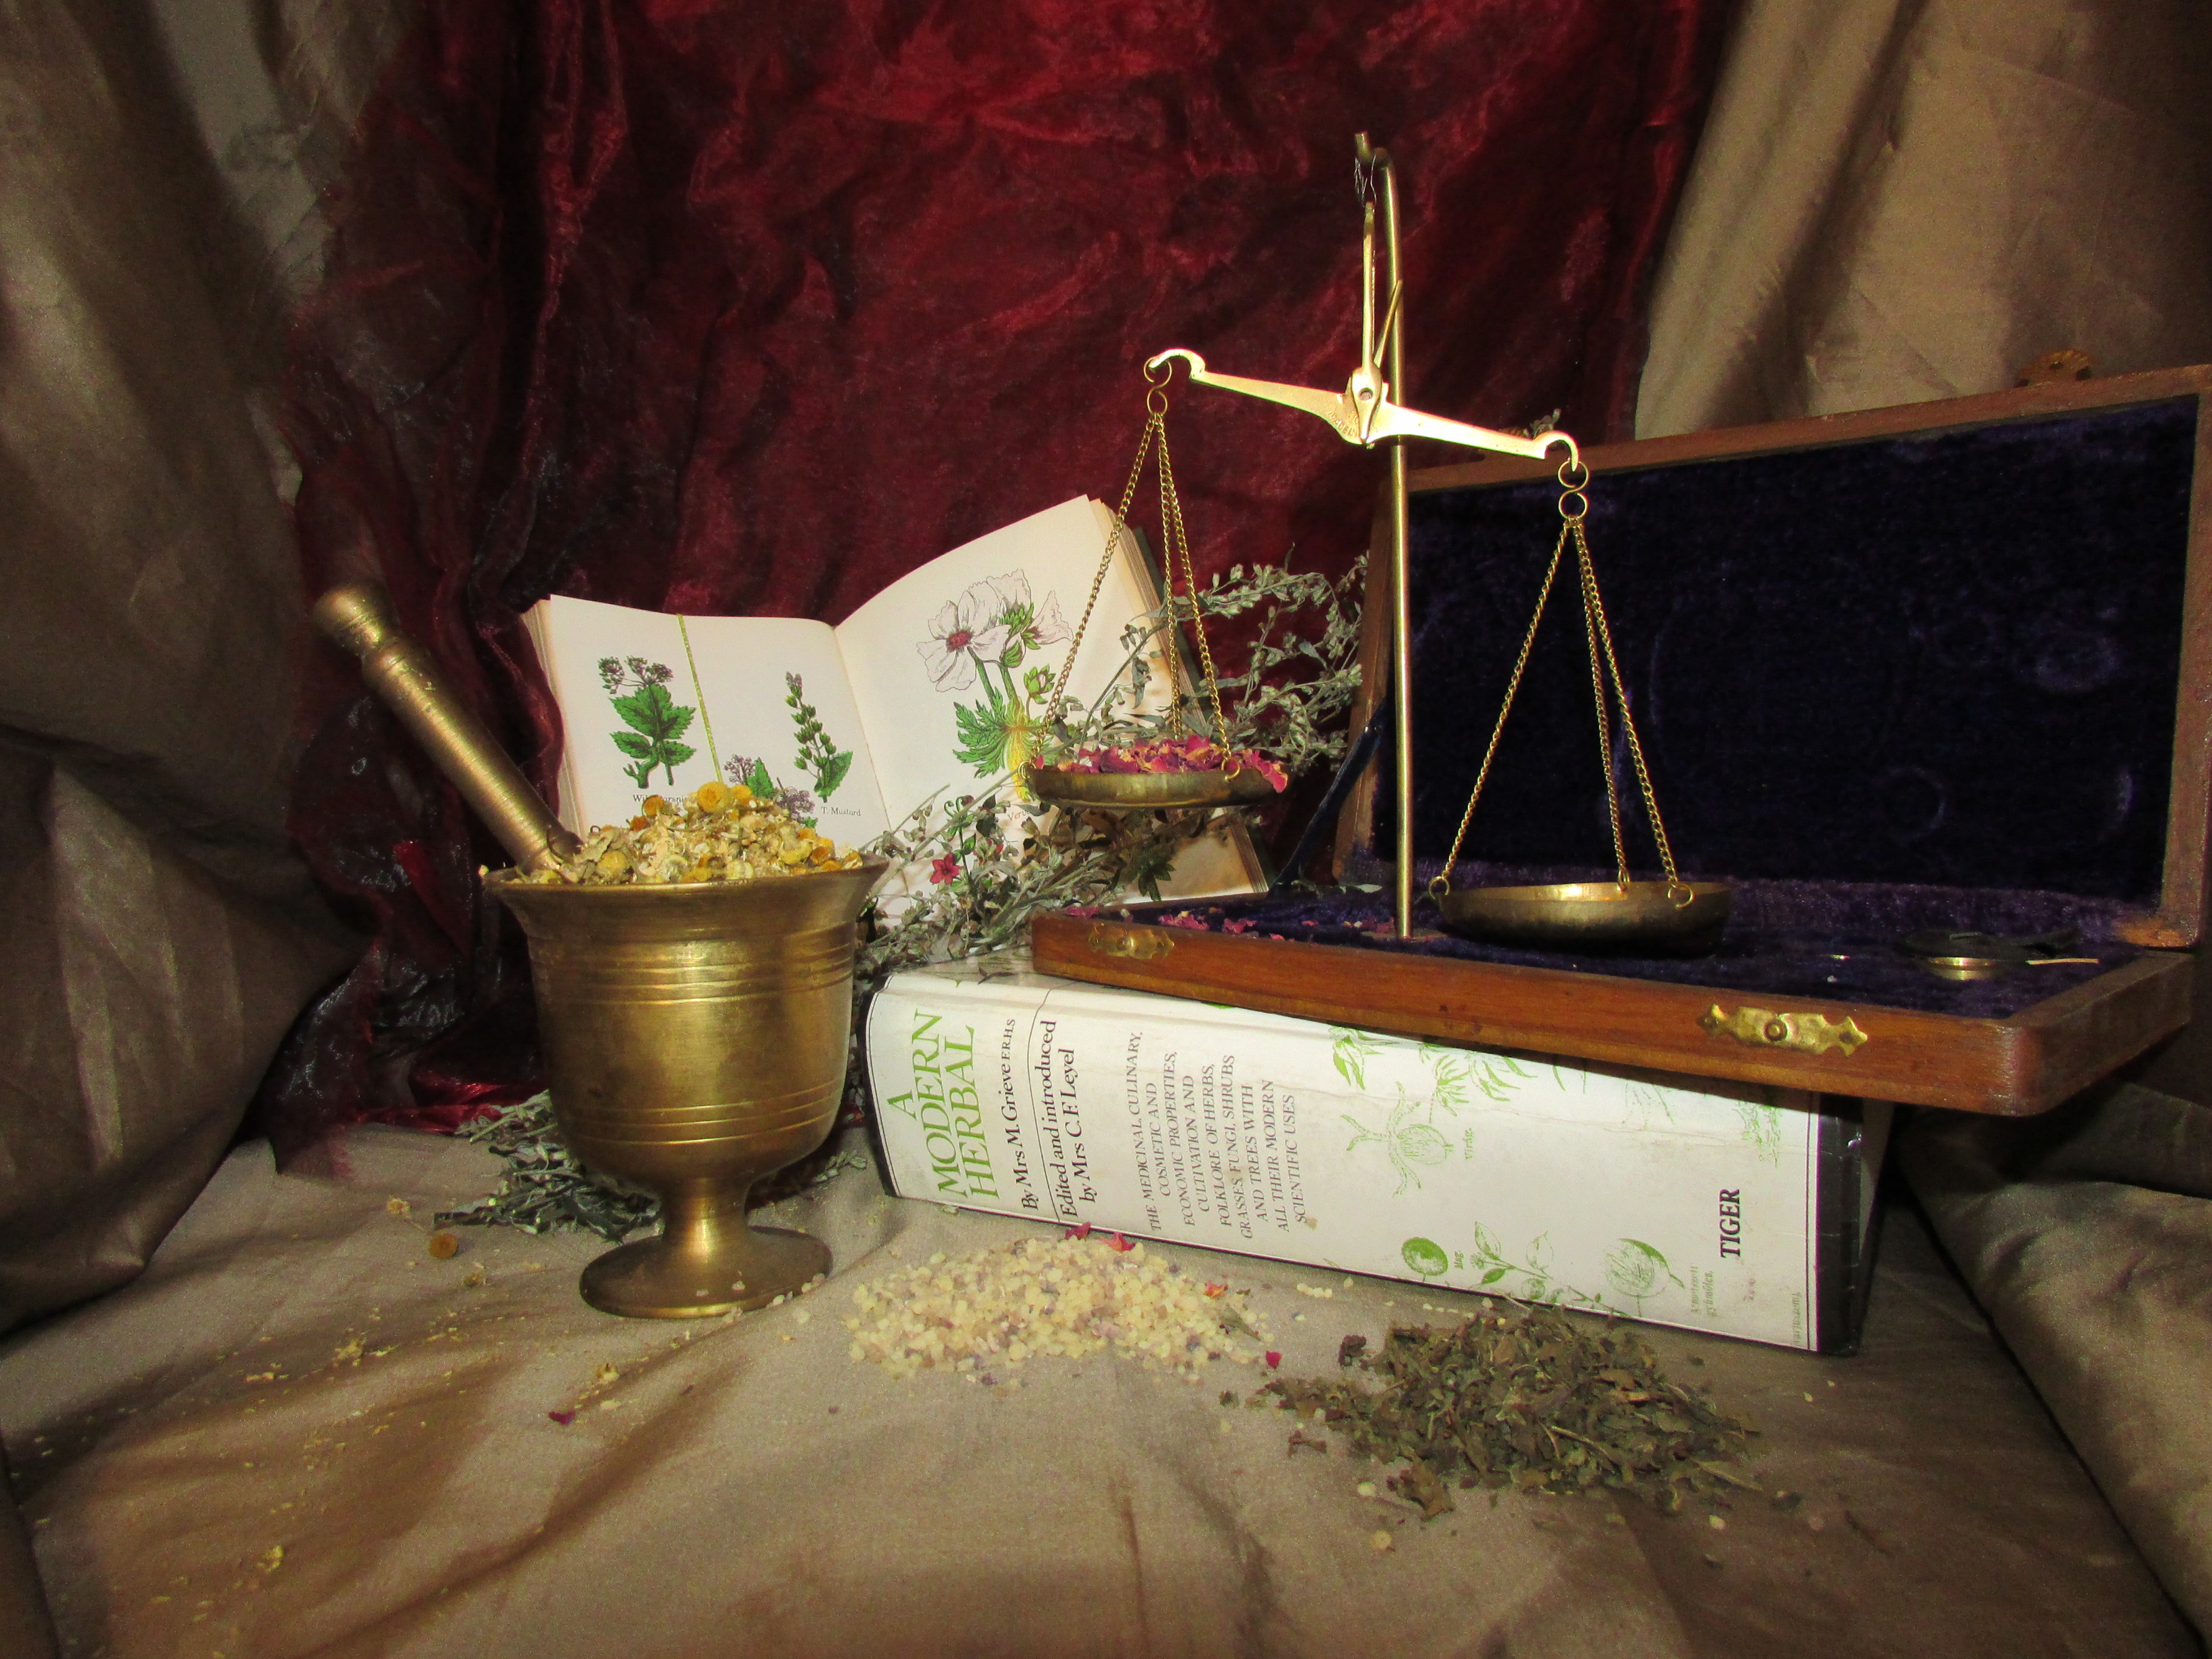 Magical Herbs & Resins - Copal resin